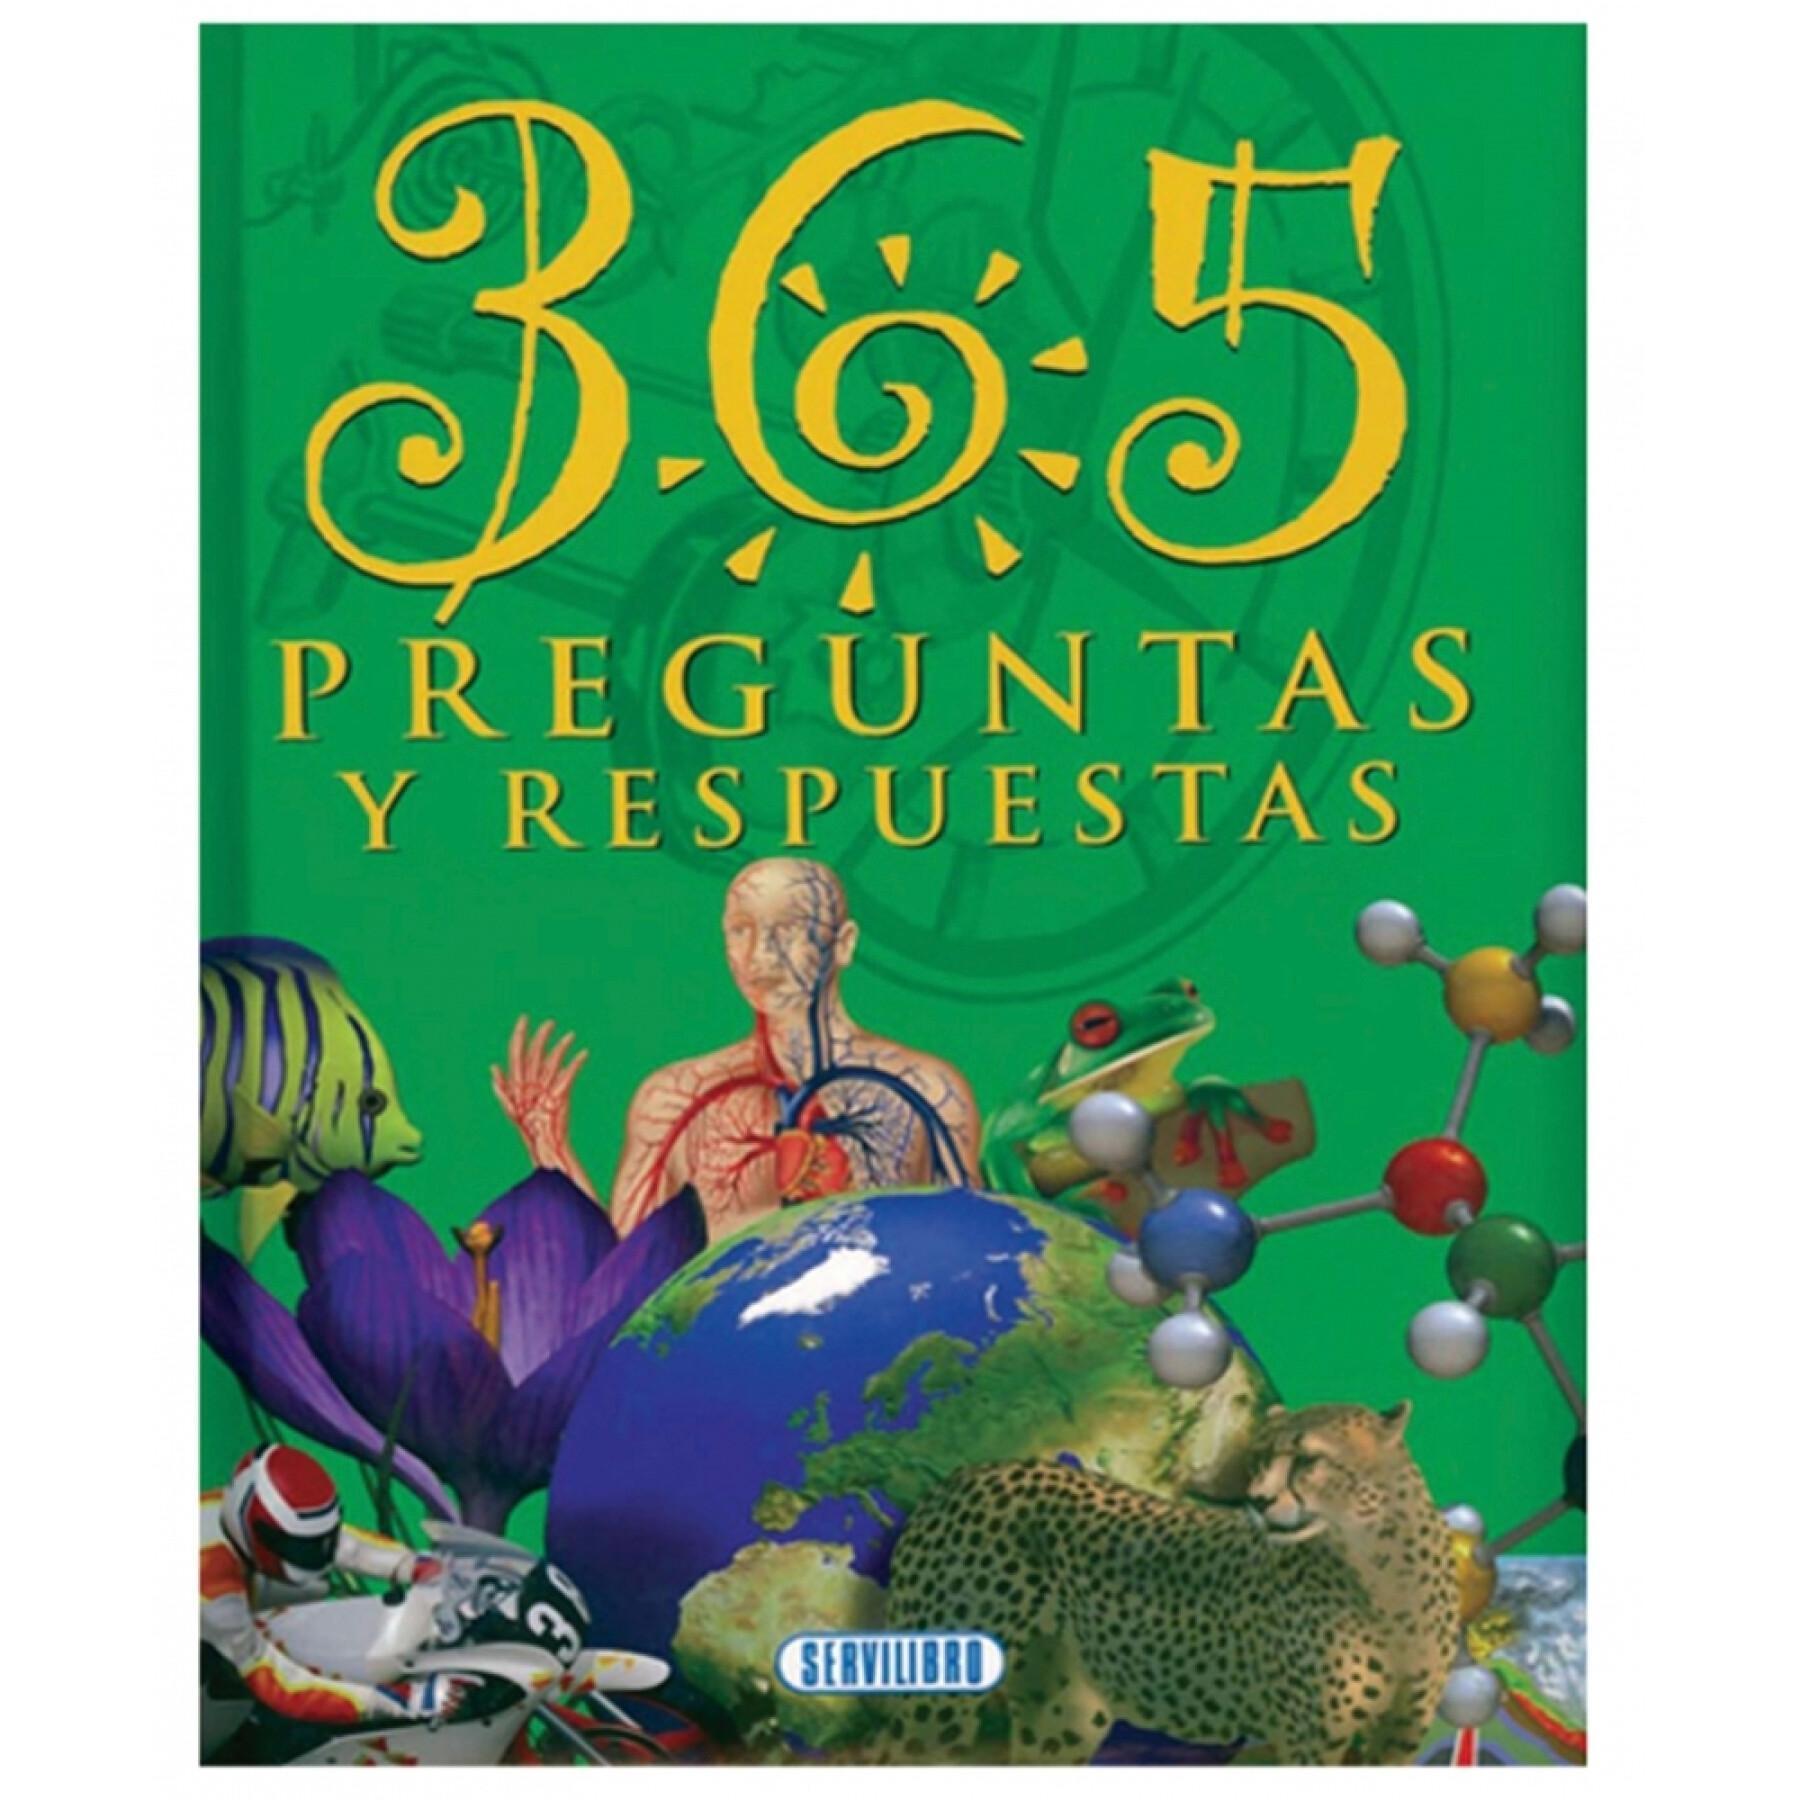 Bok för 365 frågor och svar Servilibro Ediciones